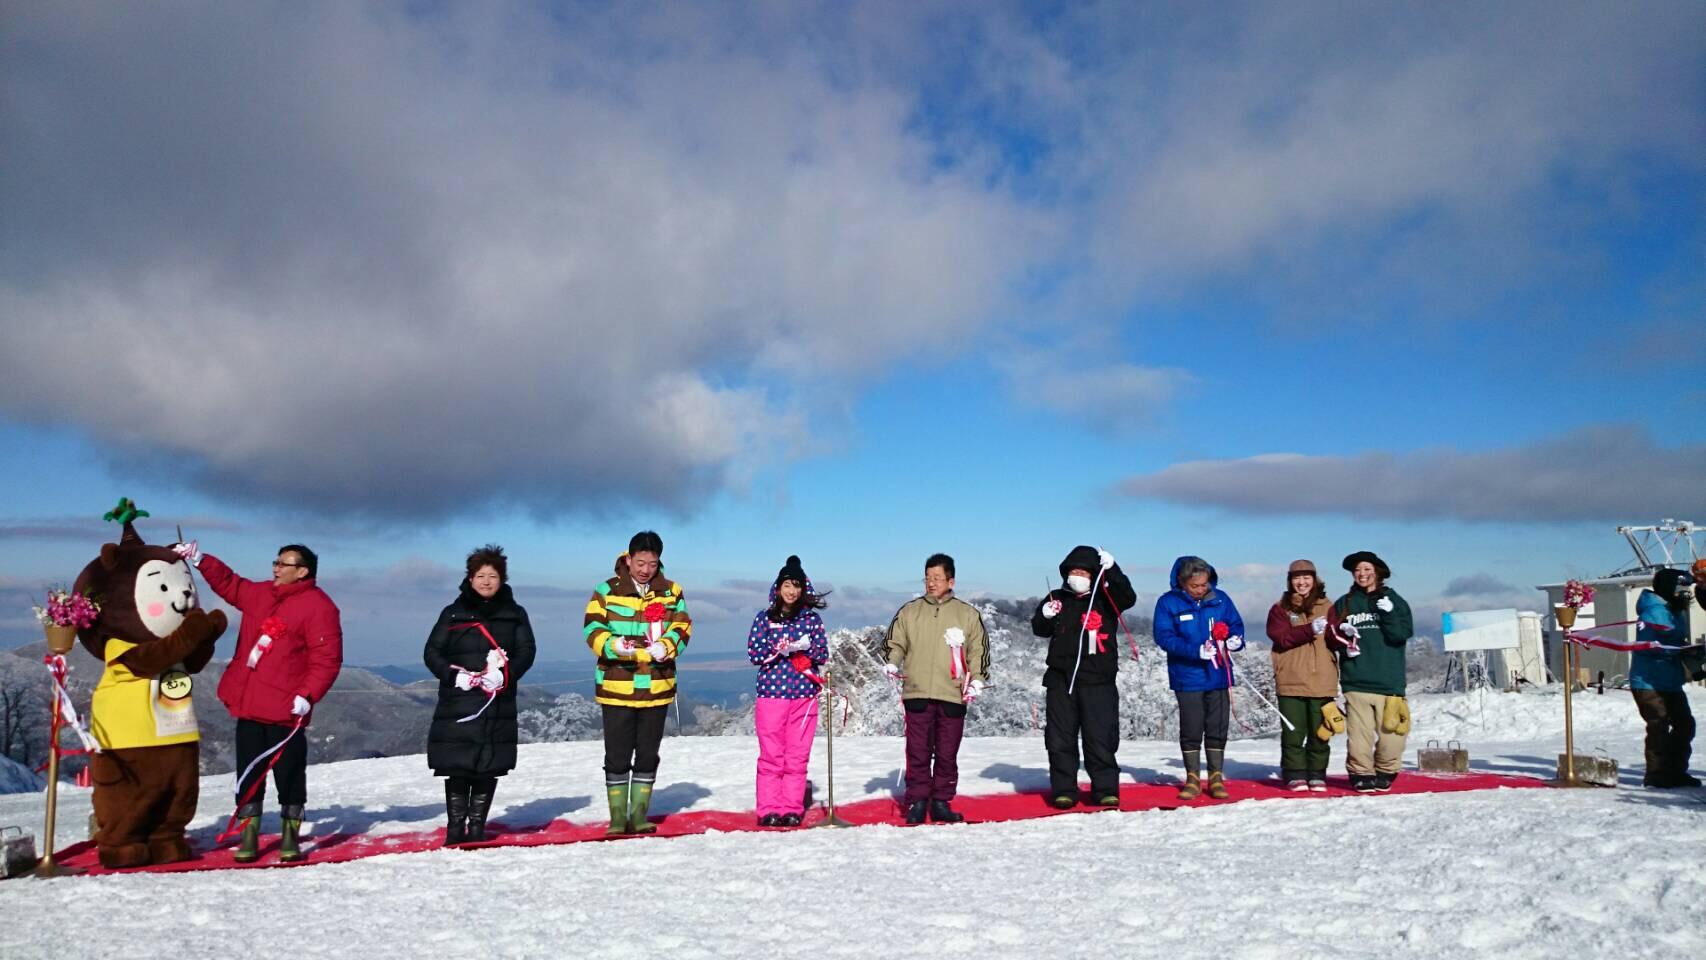 12月16日，戎總領事出席於宮崎縣五瀬町觀光協會所舉辦的「五瀬町highland滑雪場開幕典禮」